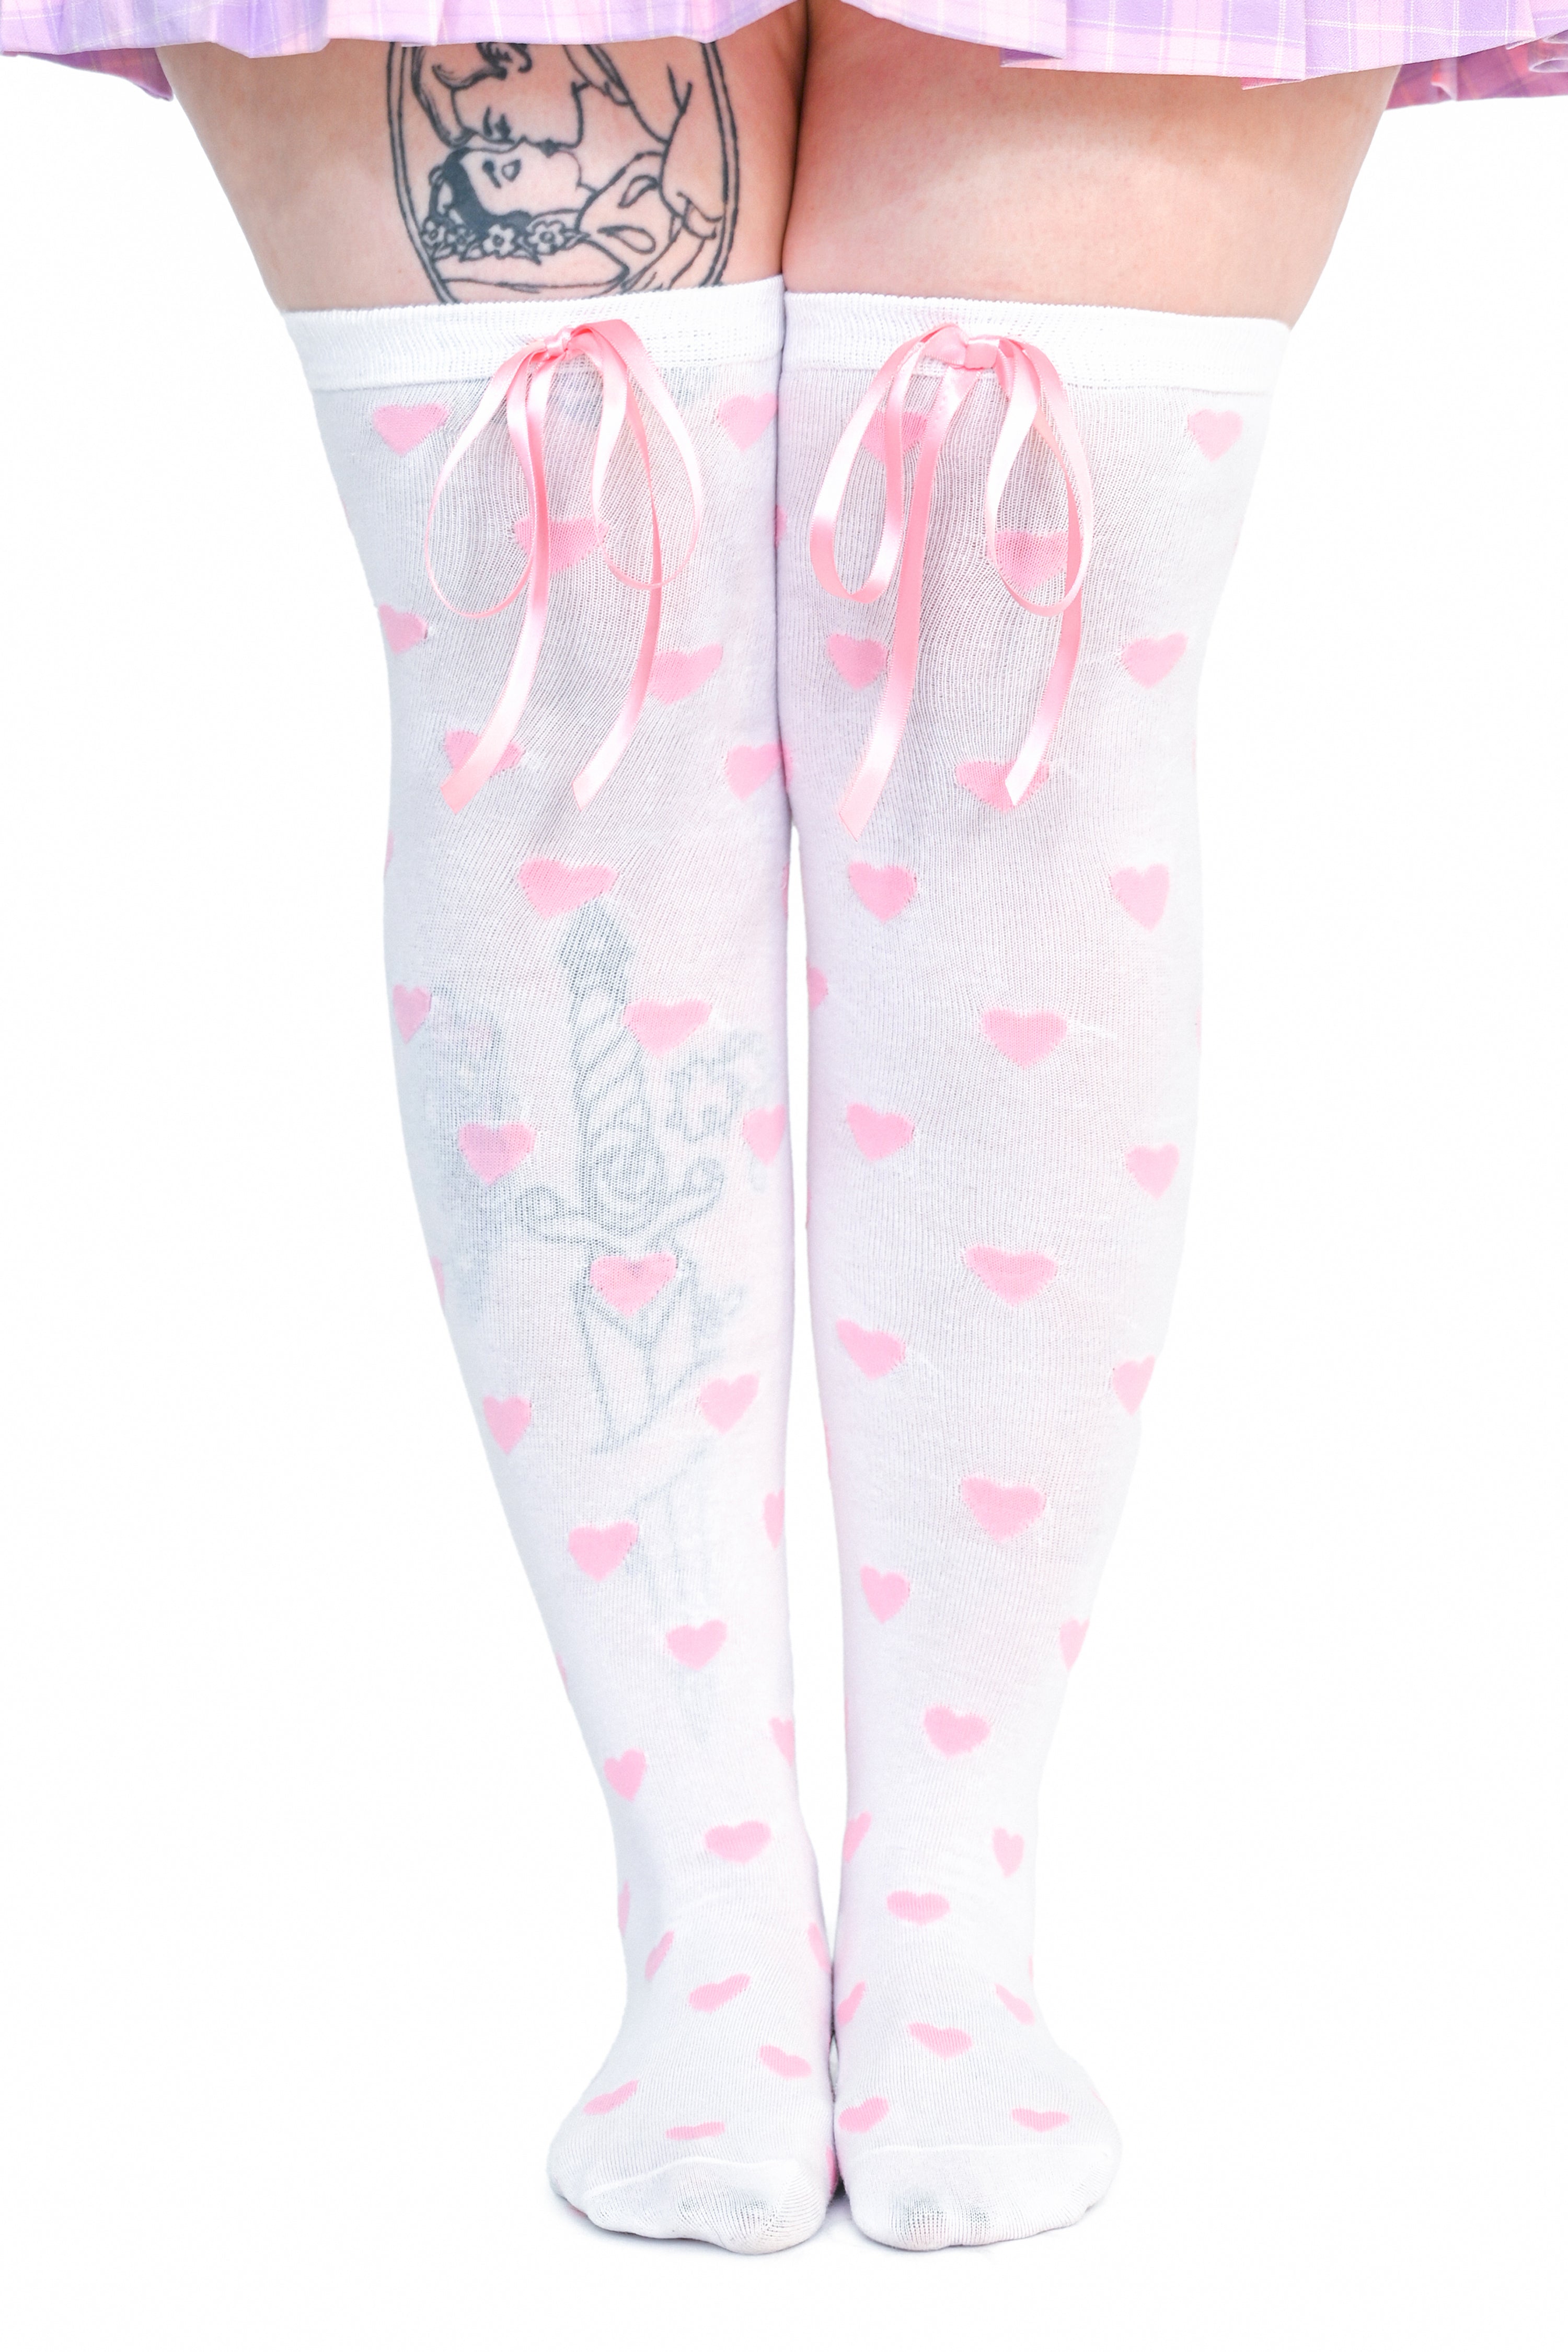 Heavenly Heart Over Knee Socks - White/Pink